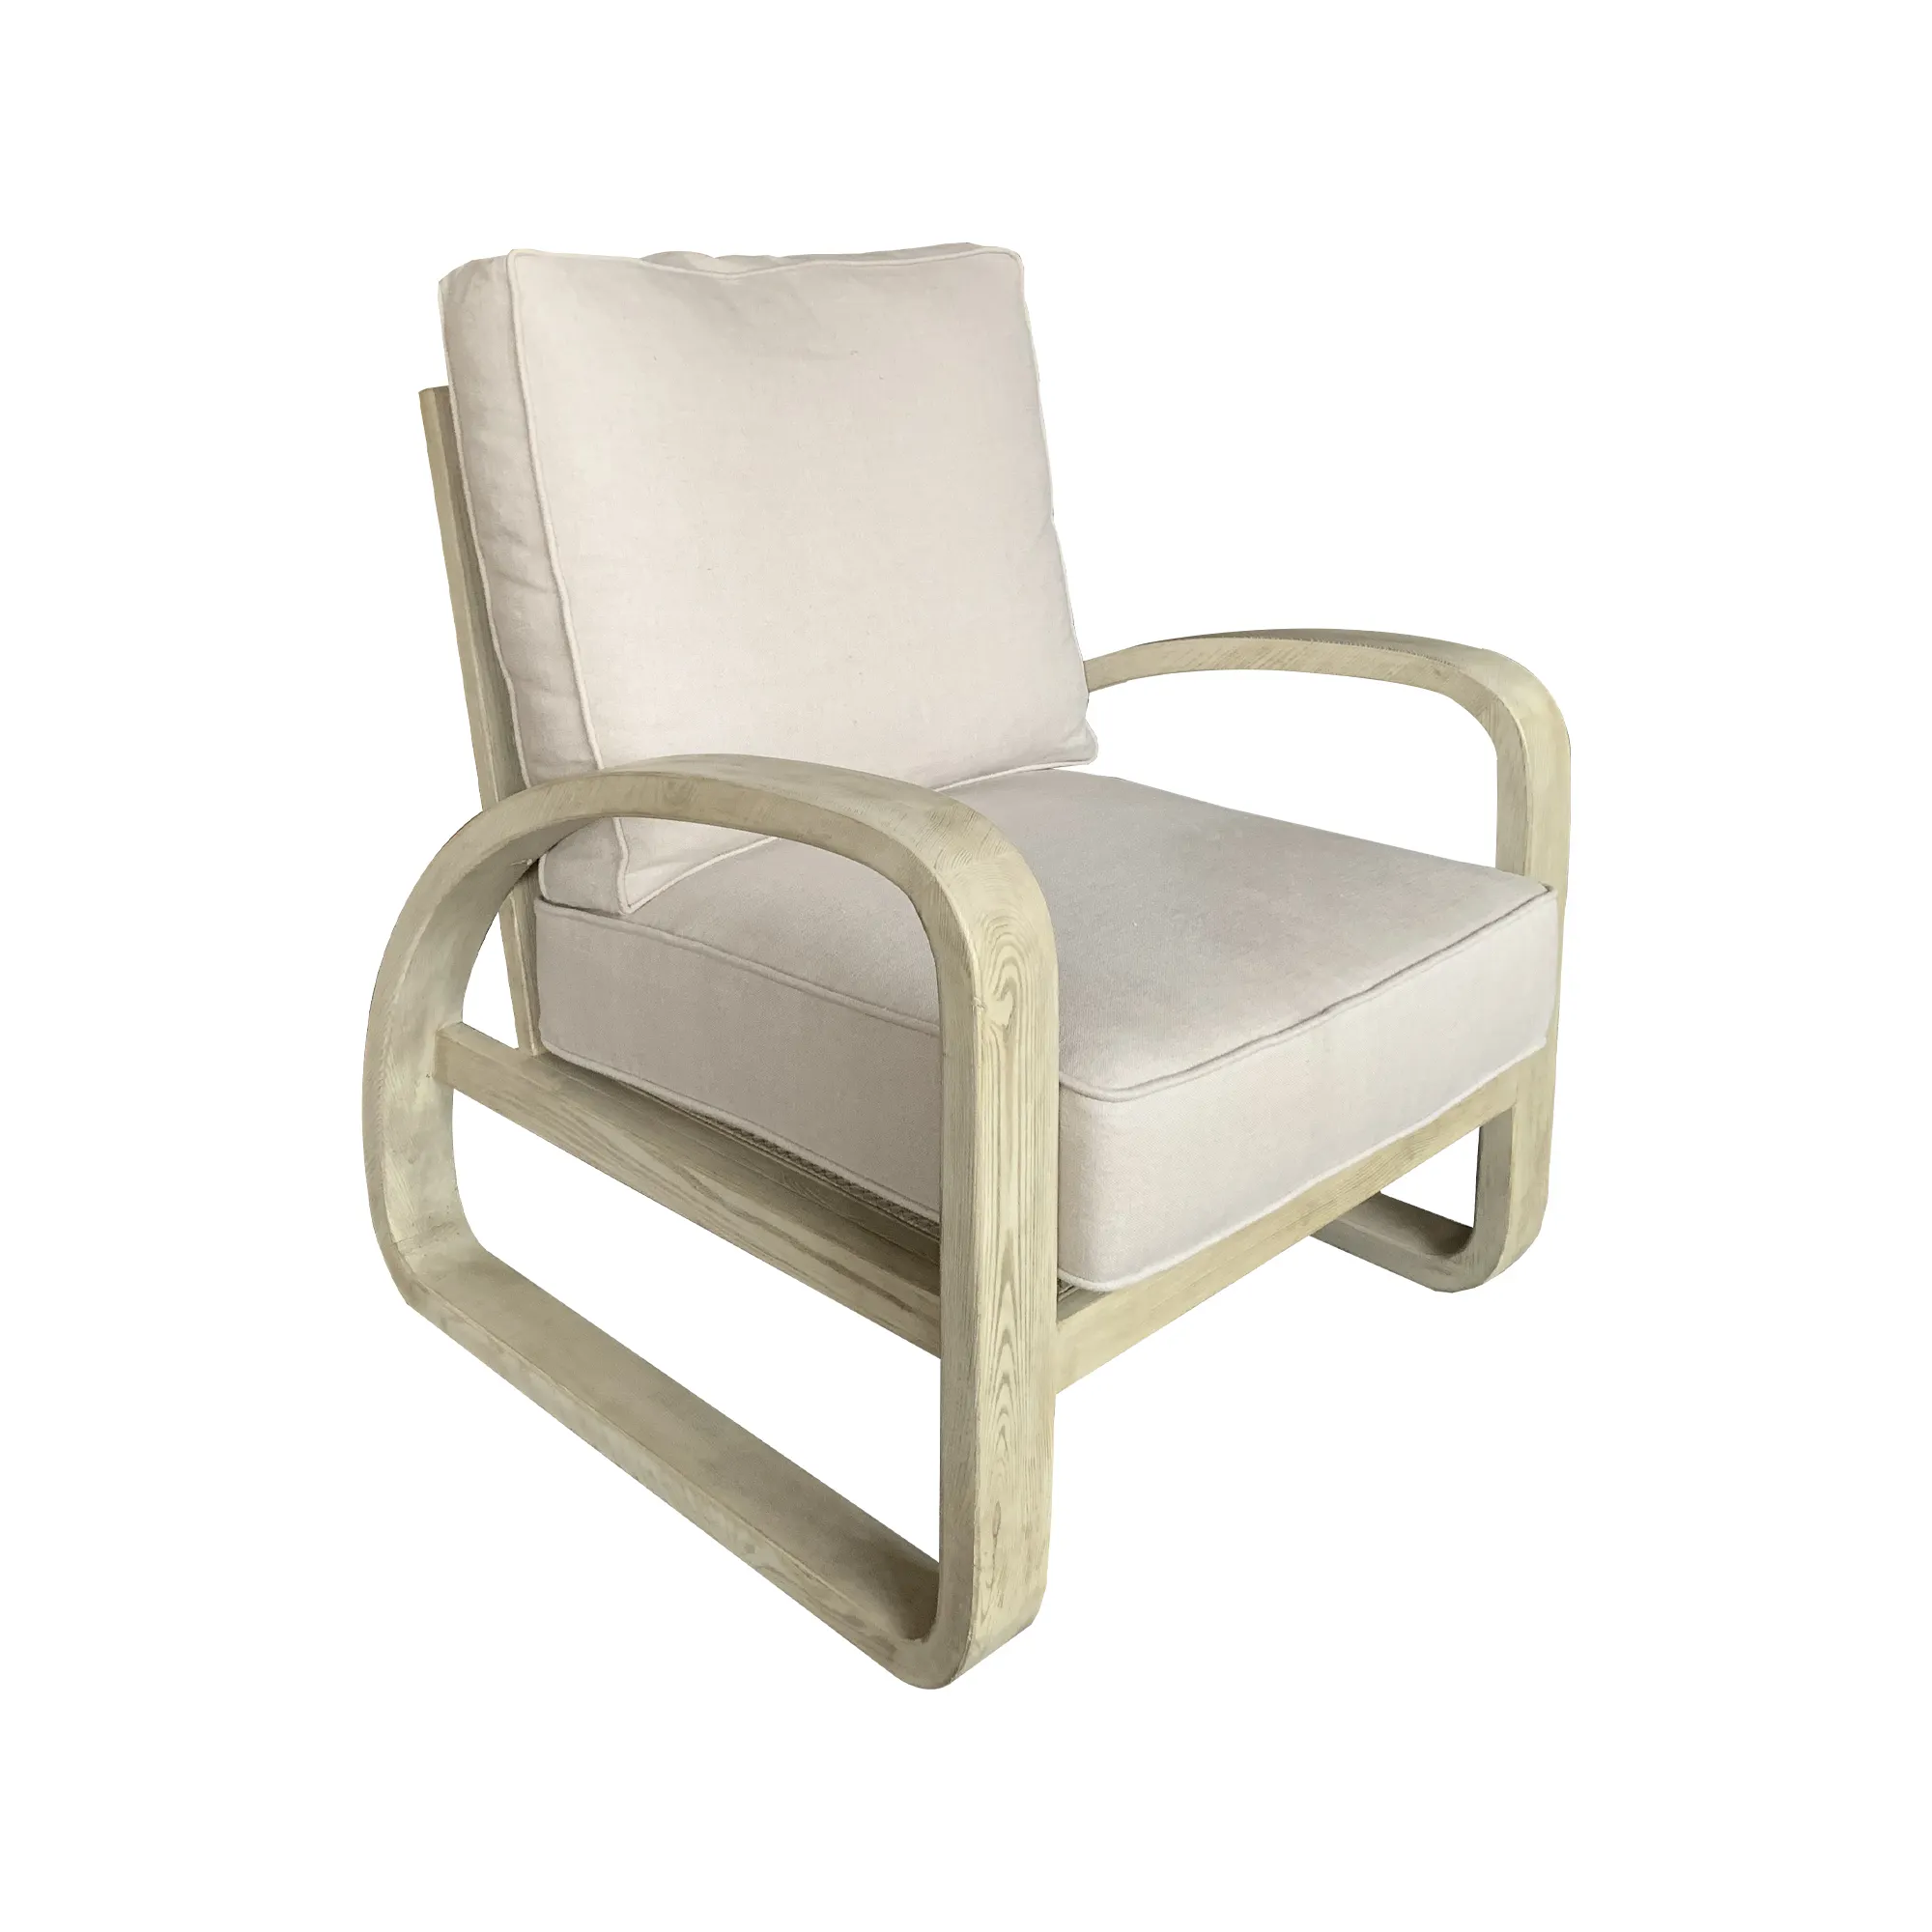 HLM42 stile nordico giapponese intagliato a mano poltrona in legno con struttura in frassino sedile e retro Chaise Lounge sedia per il tempo libero con cuscini